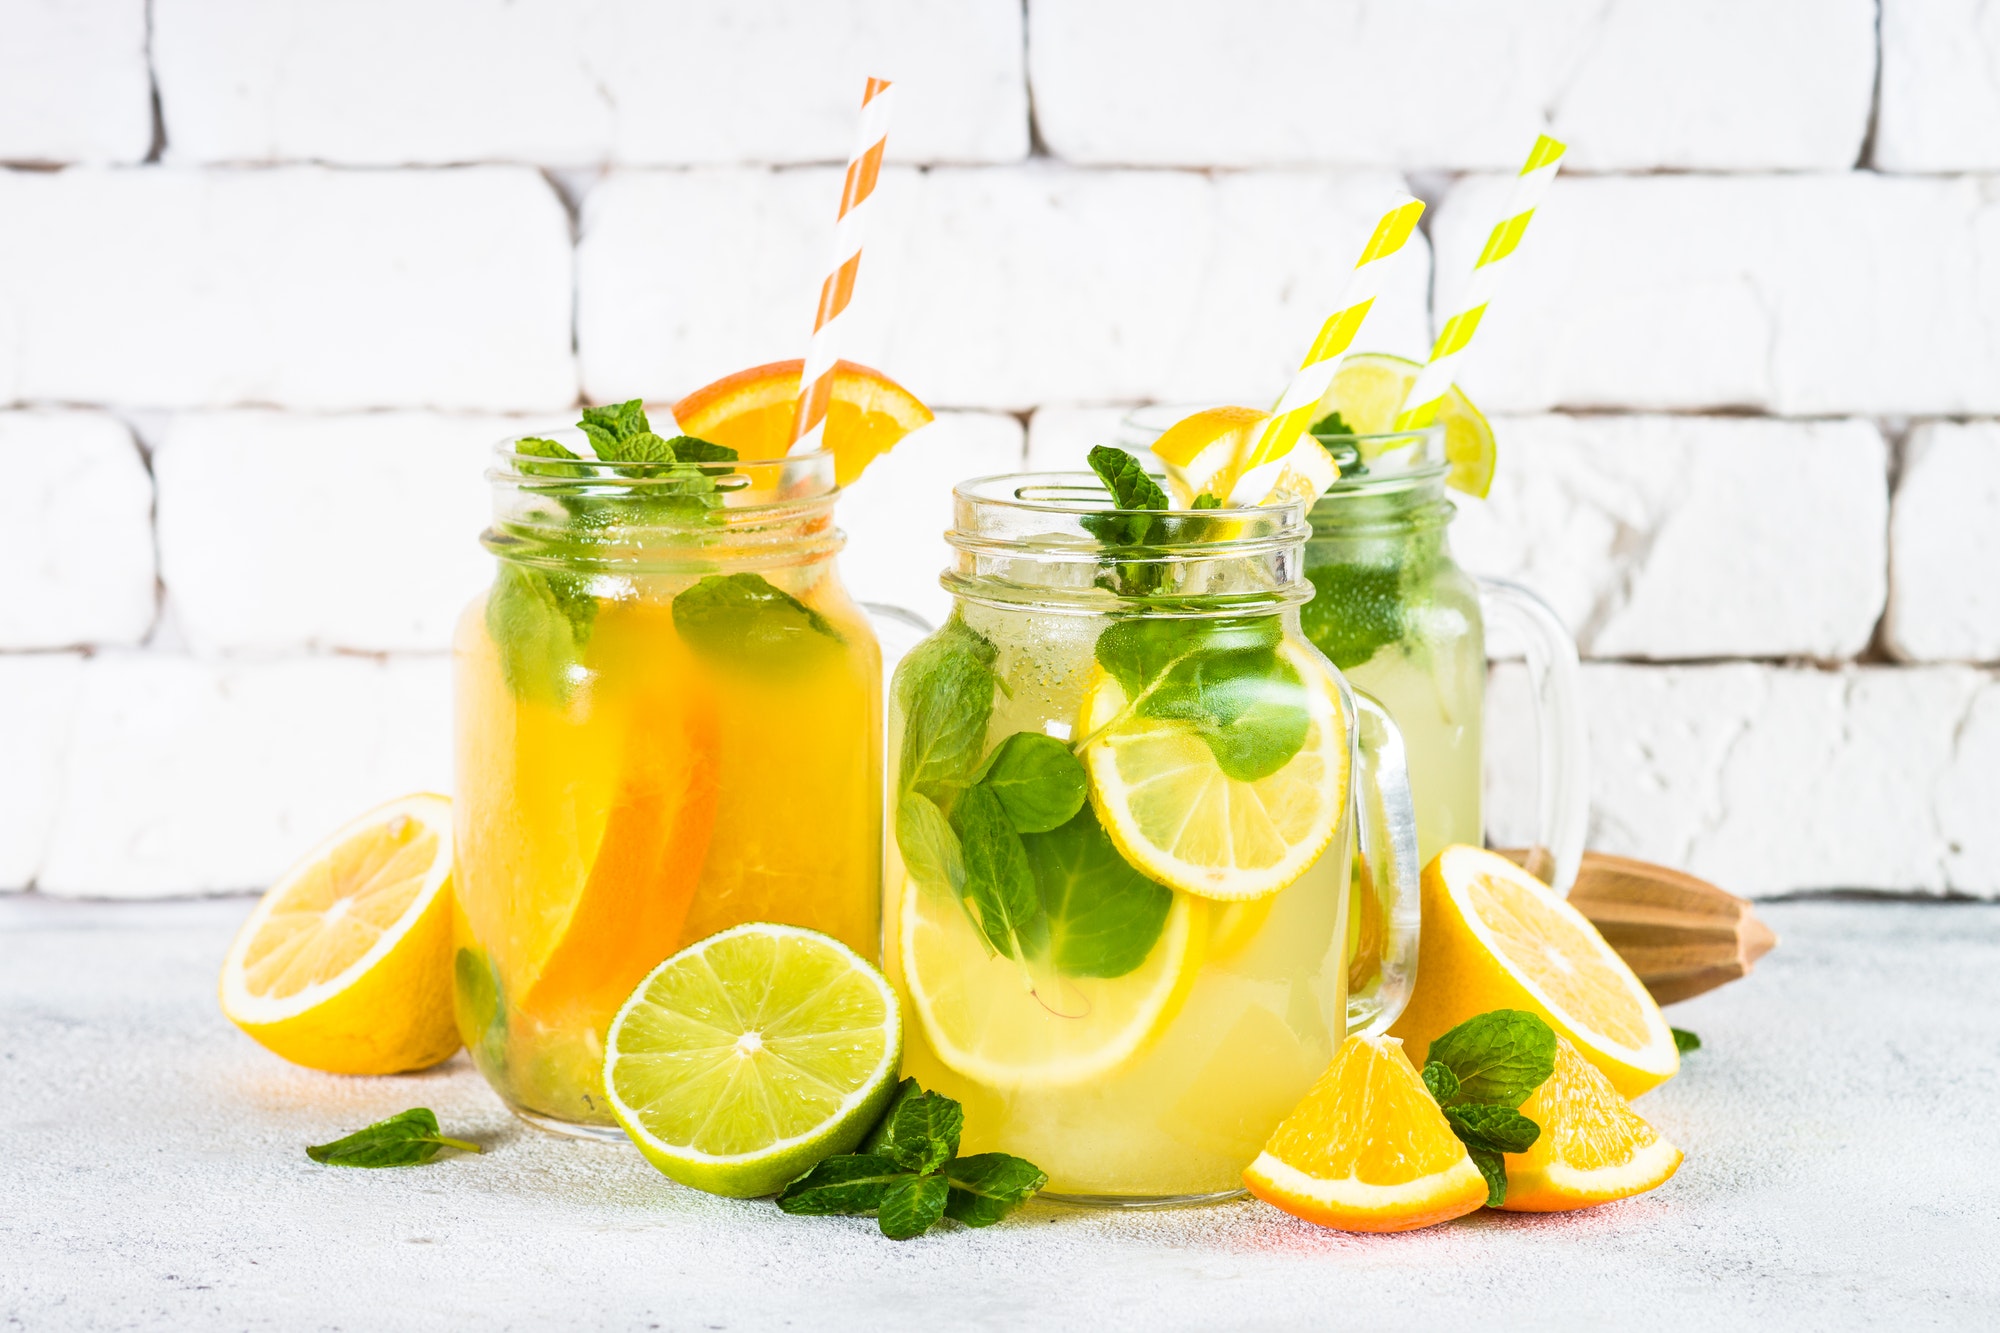 Lemonade, mojito and orange lemonade